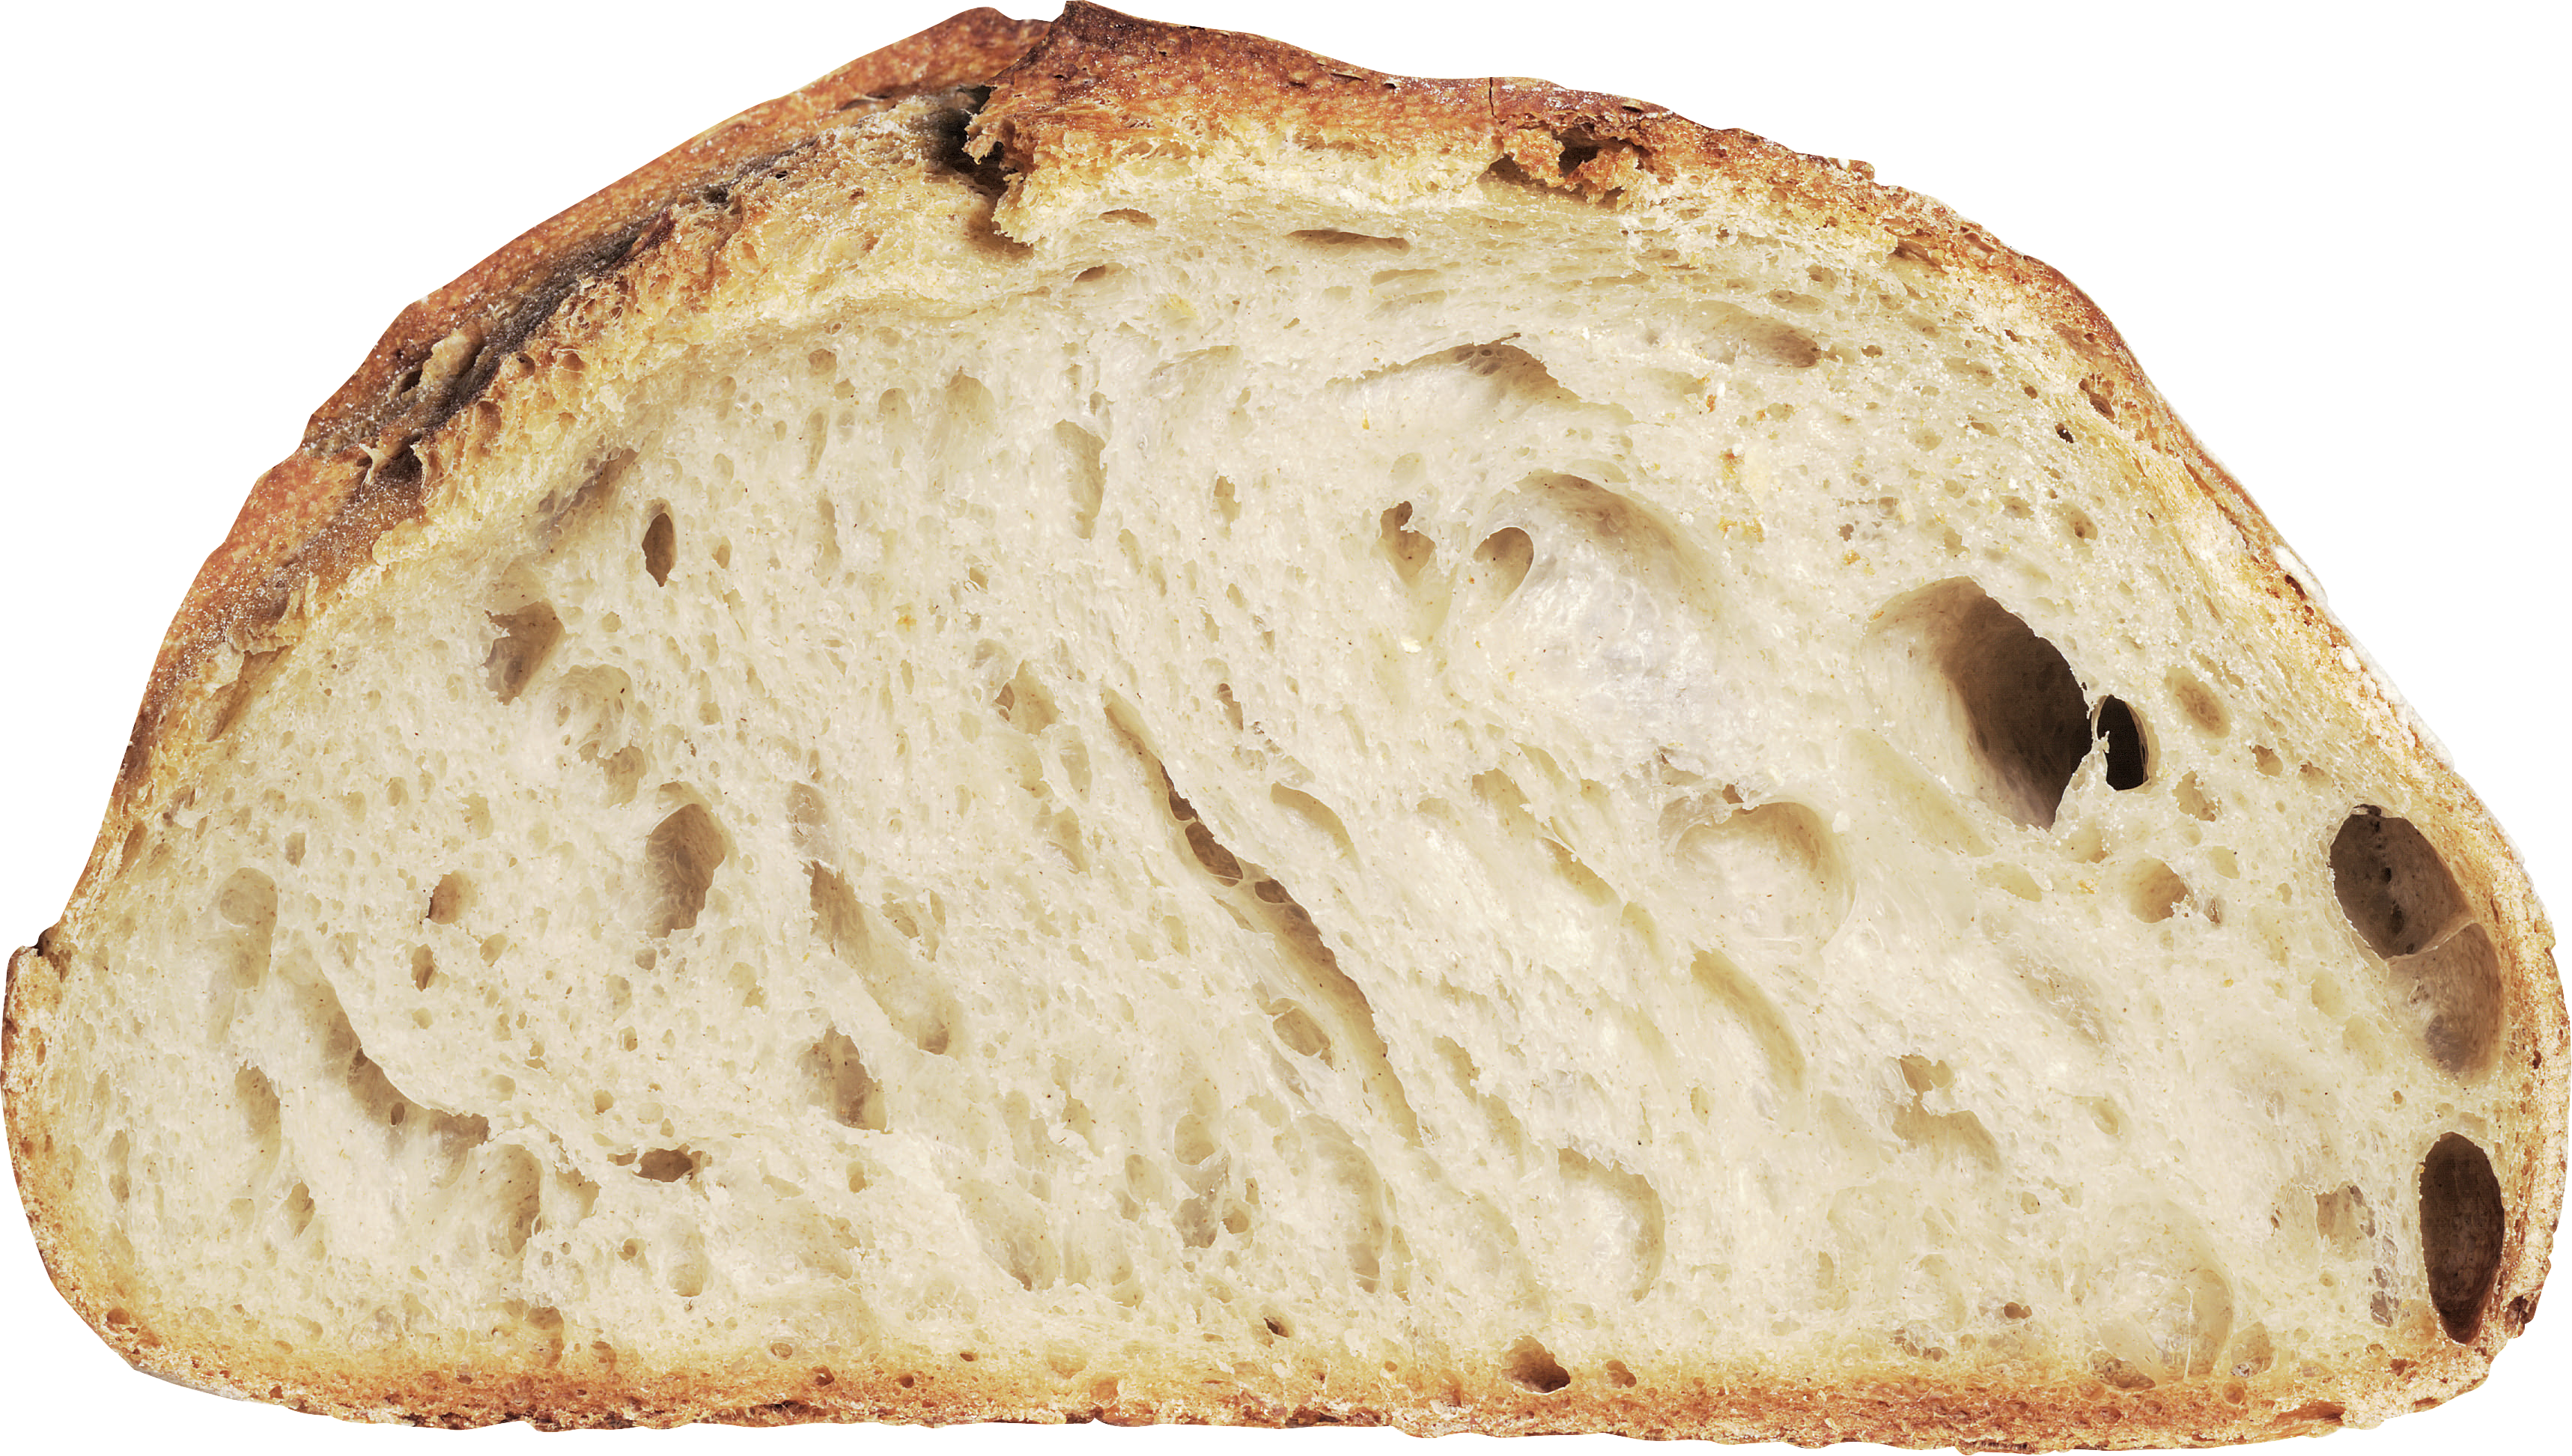 Roti putih